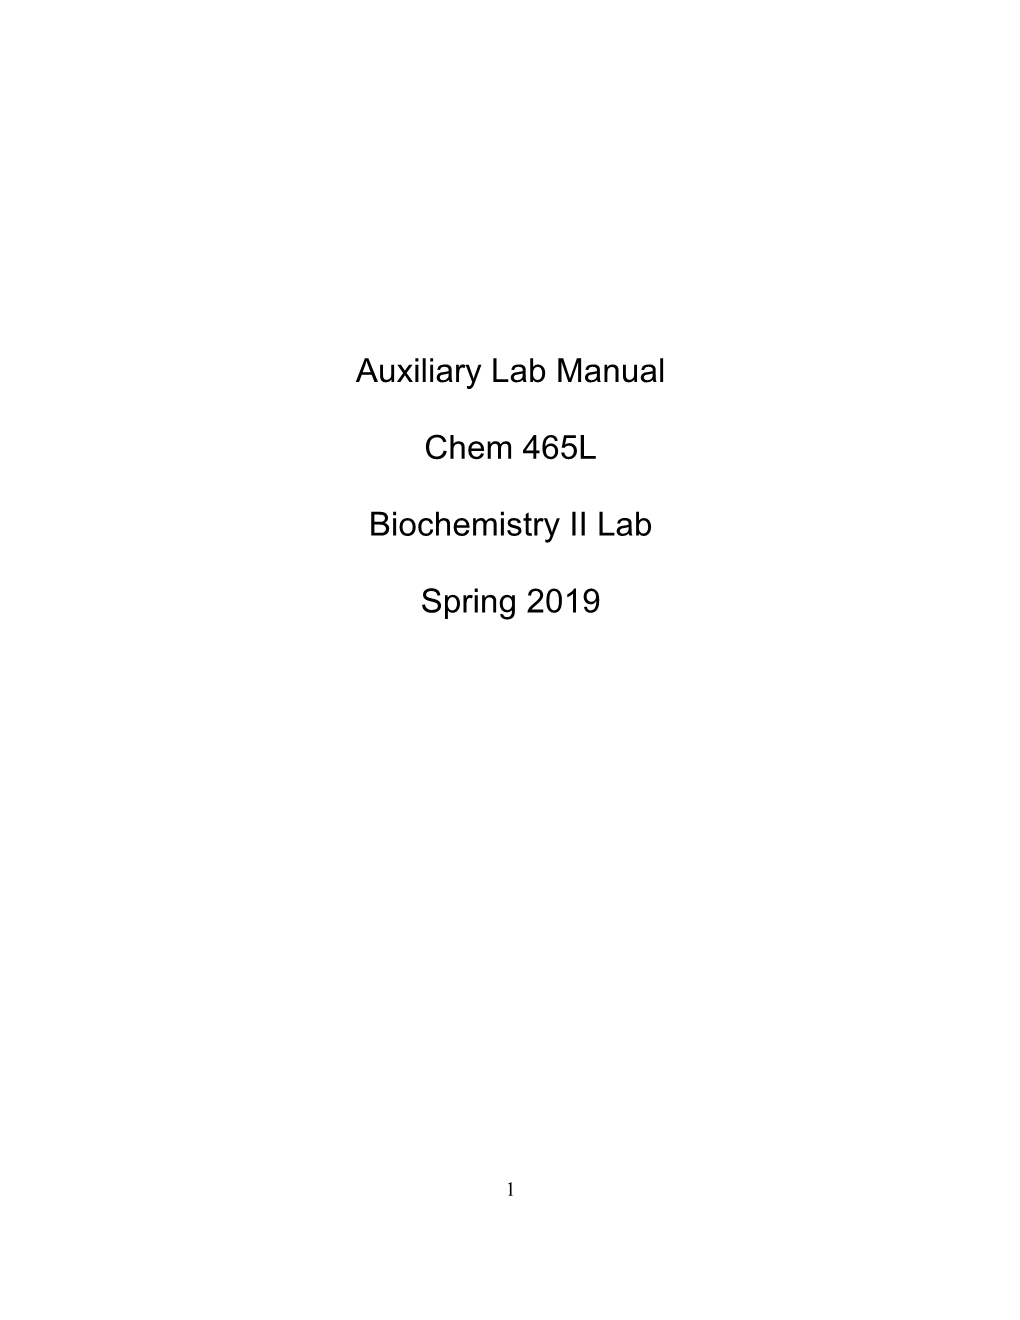 Auxiliary Lab Manual Chem 465L Biochemistry II Lab Spring 2019